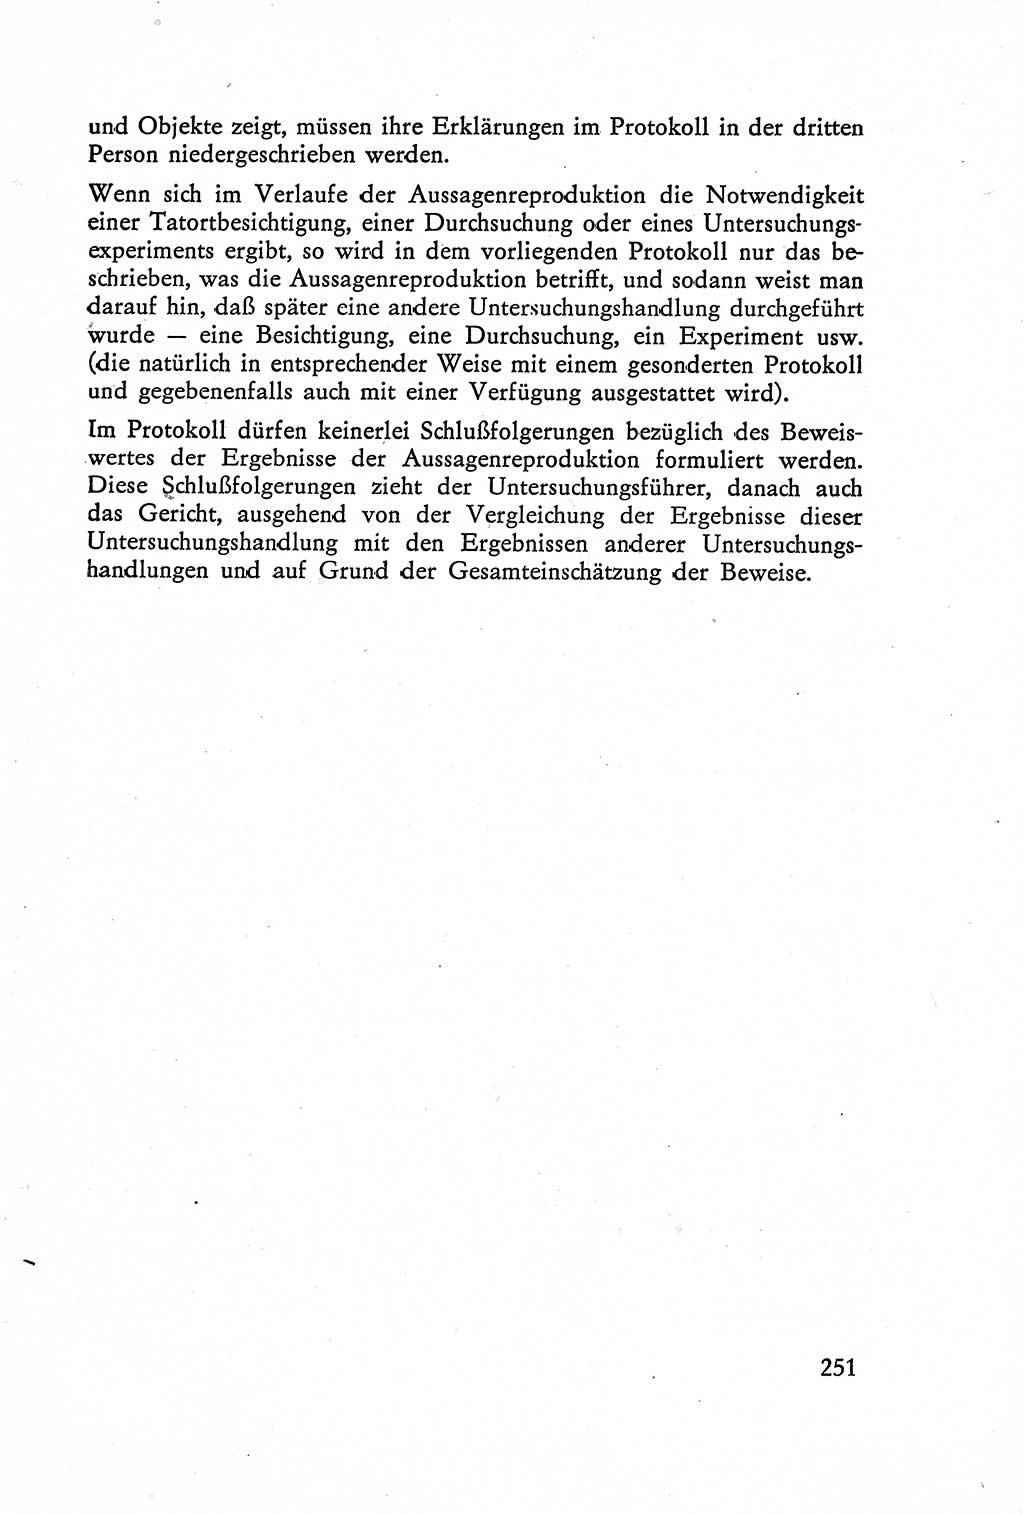 Die Vernehmung [Deutsche Demokratische Republik (DDR)] 1960, Seite 251 (Vern. DDR 1960, S. 251)